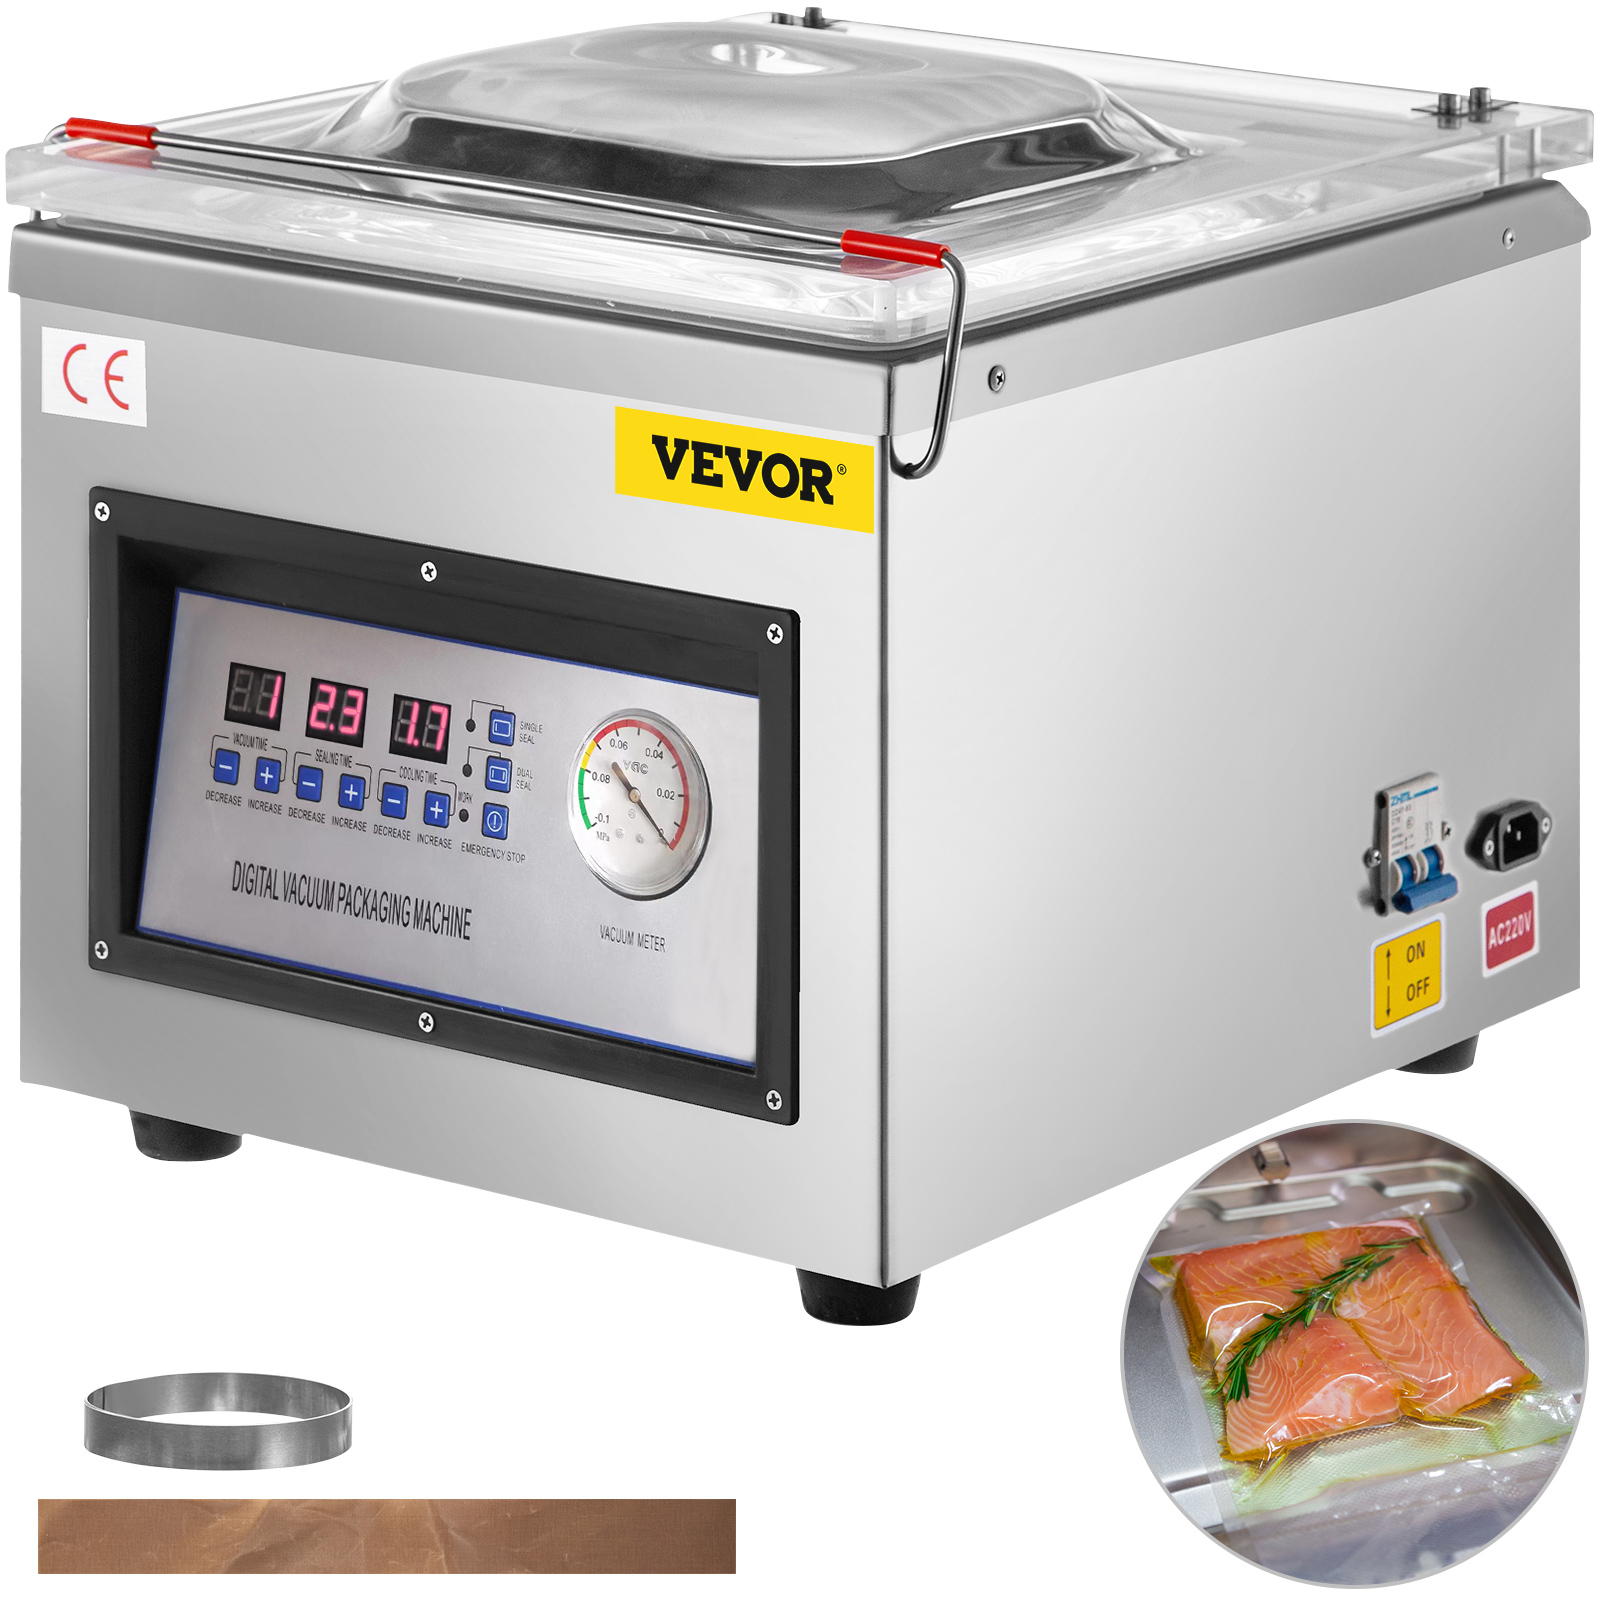 FoodSaver Vacuum Sealing System, 2200 Series